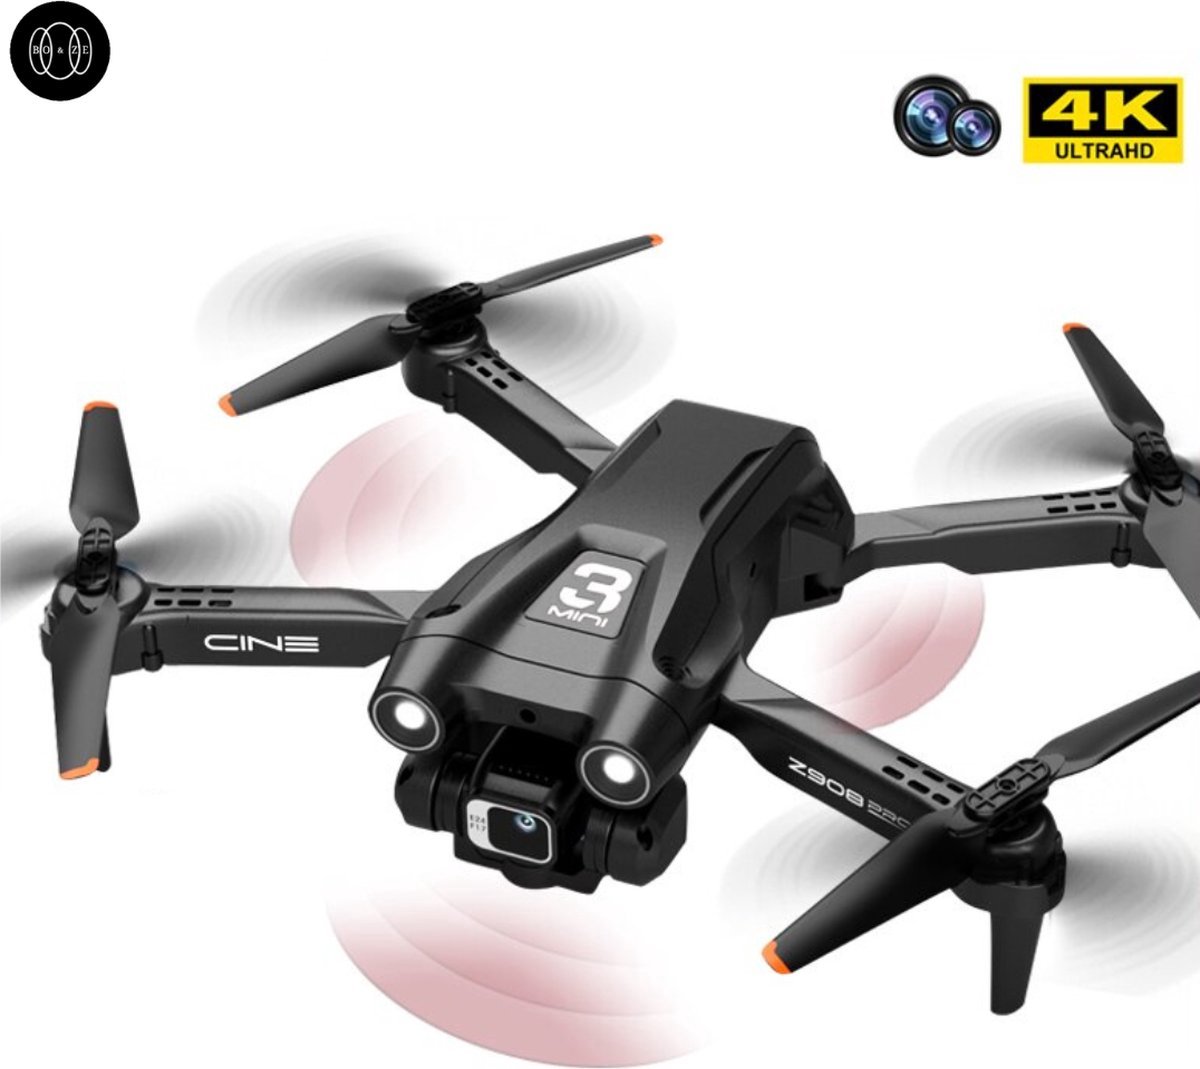 ShopbijStef - Boze® 4K Drone - Drone Met Camera - Drones - Drones met camera voor volwassenen - Inclusief 2 Batterijen - Zwart